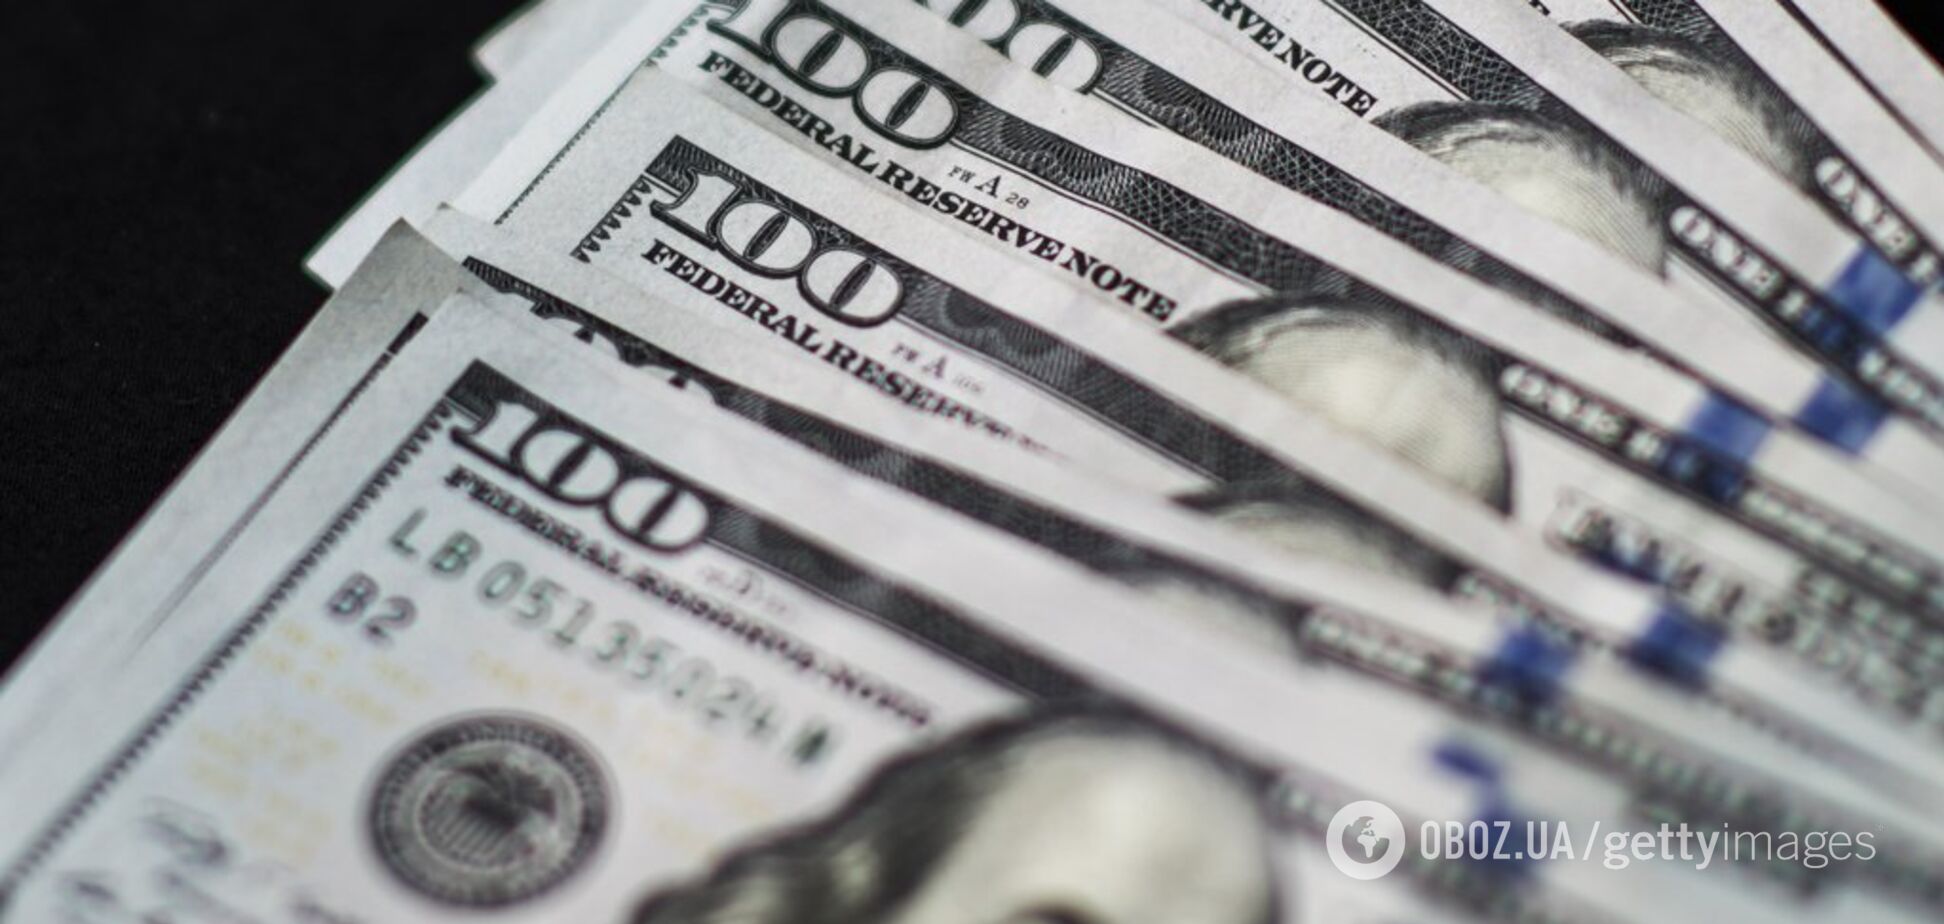 Курс доллара в украинских банках поднялся: сколько стоит